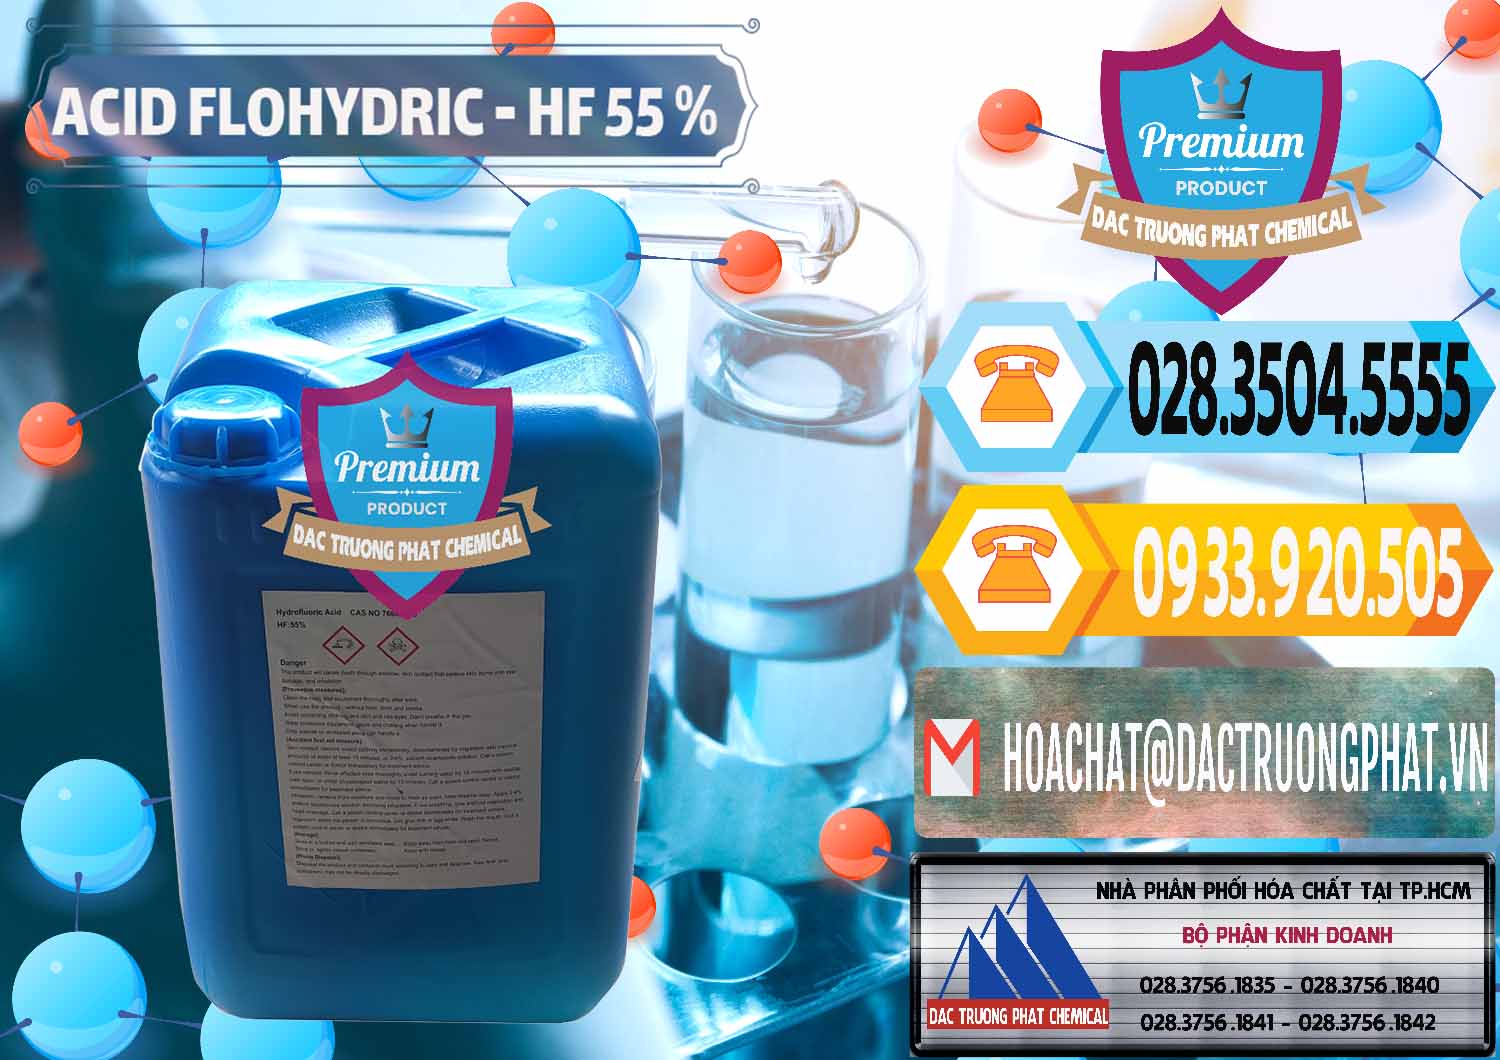 Chuyên bán ( cung cấp ) Axit HF - Acid HF 55% Can Xanh Trung Quốc China - 0080 - Đơn vị kinh doanh ( phân phối ) hóa chất tại TP.HCM - hoachattayrua.net